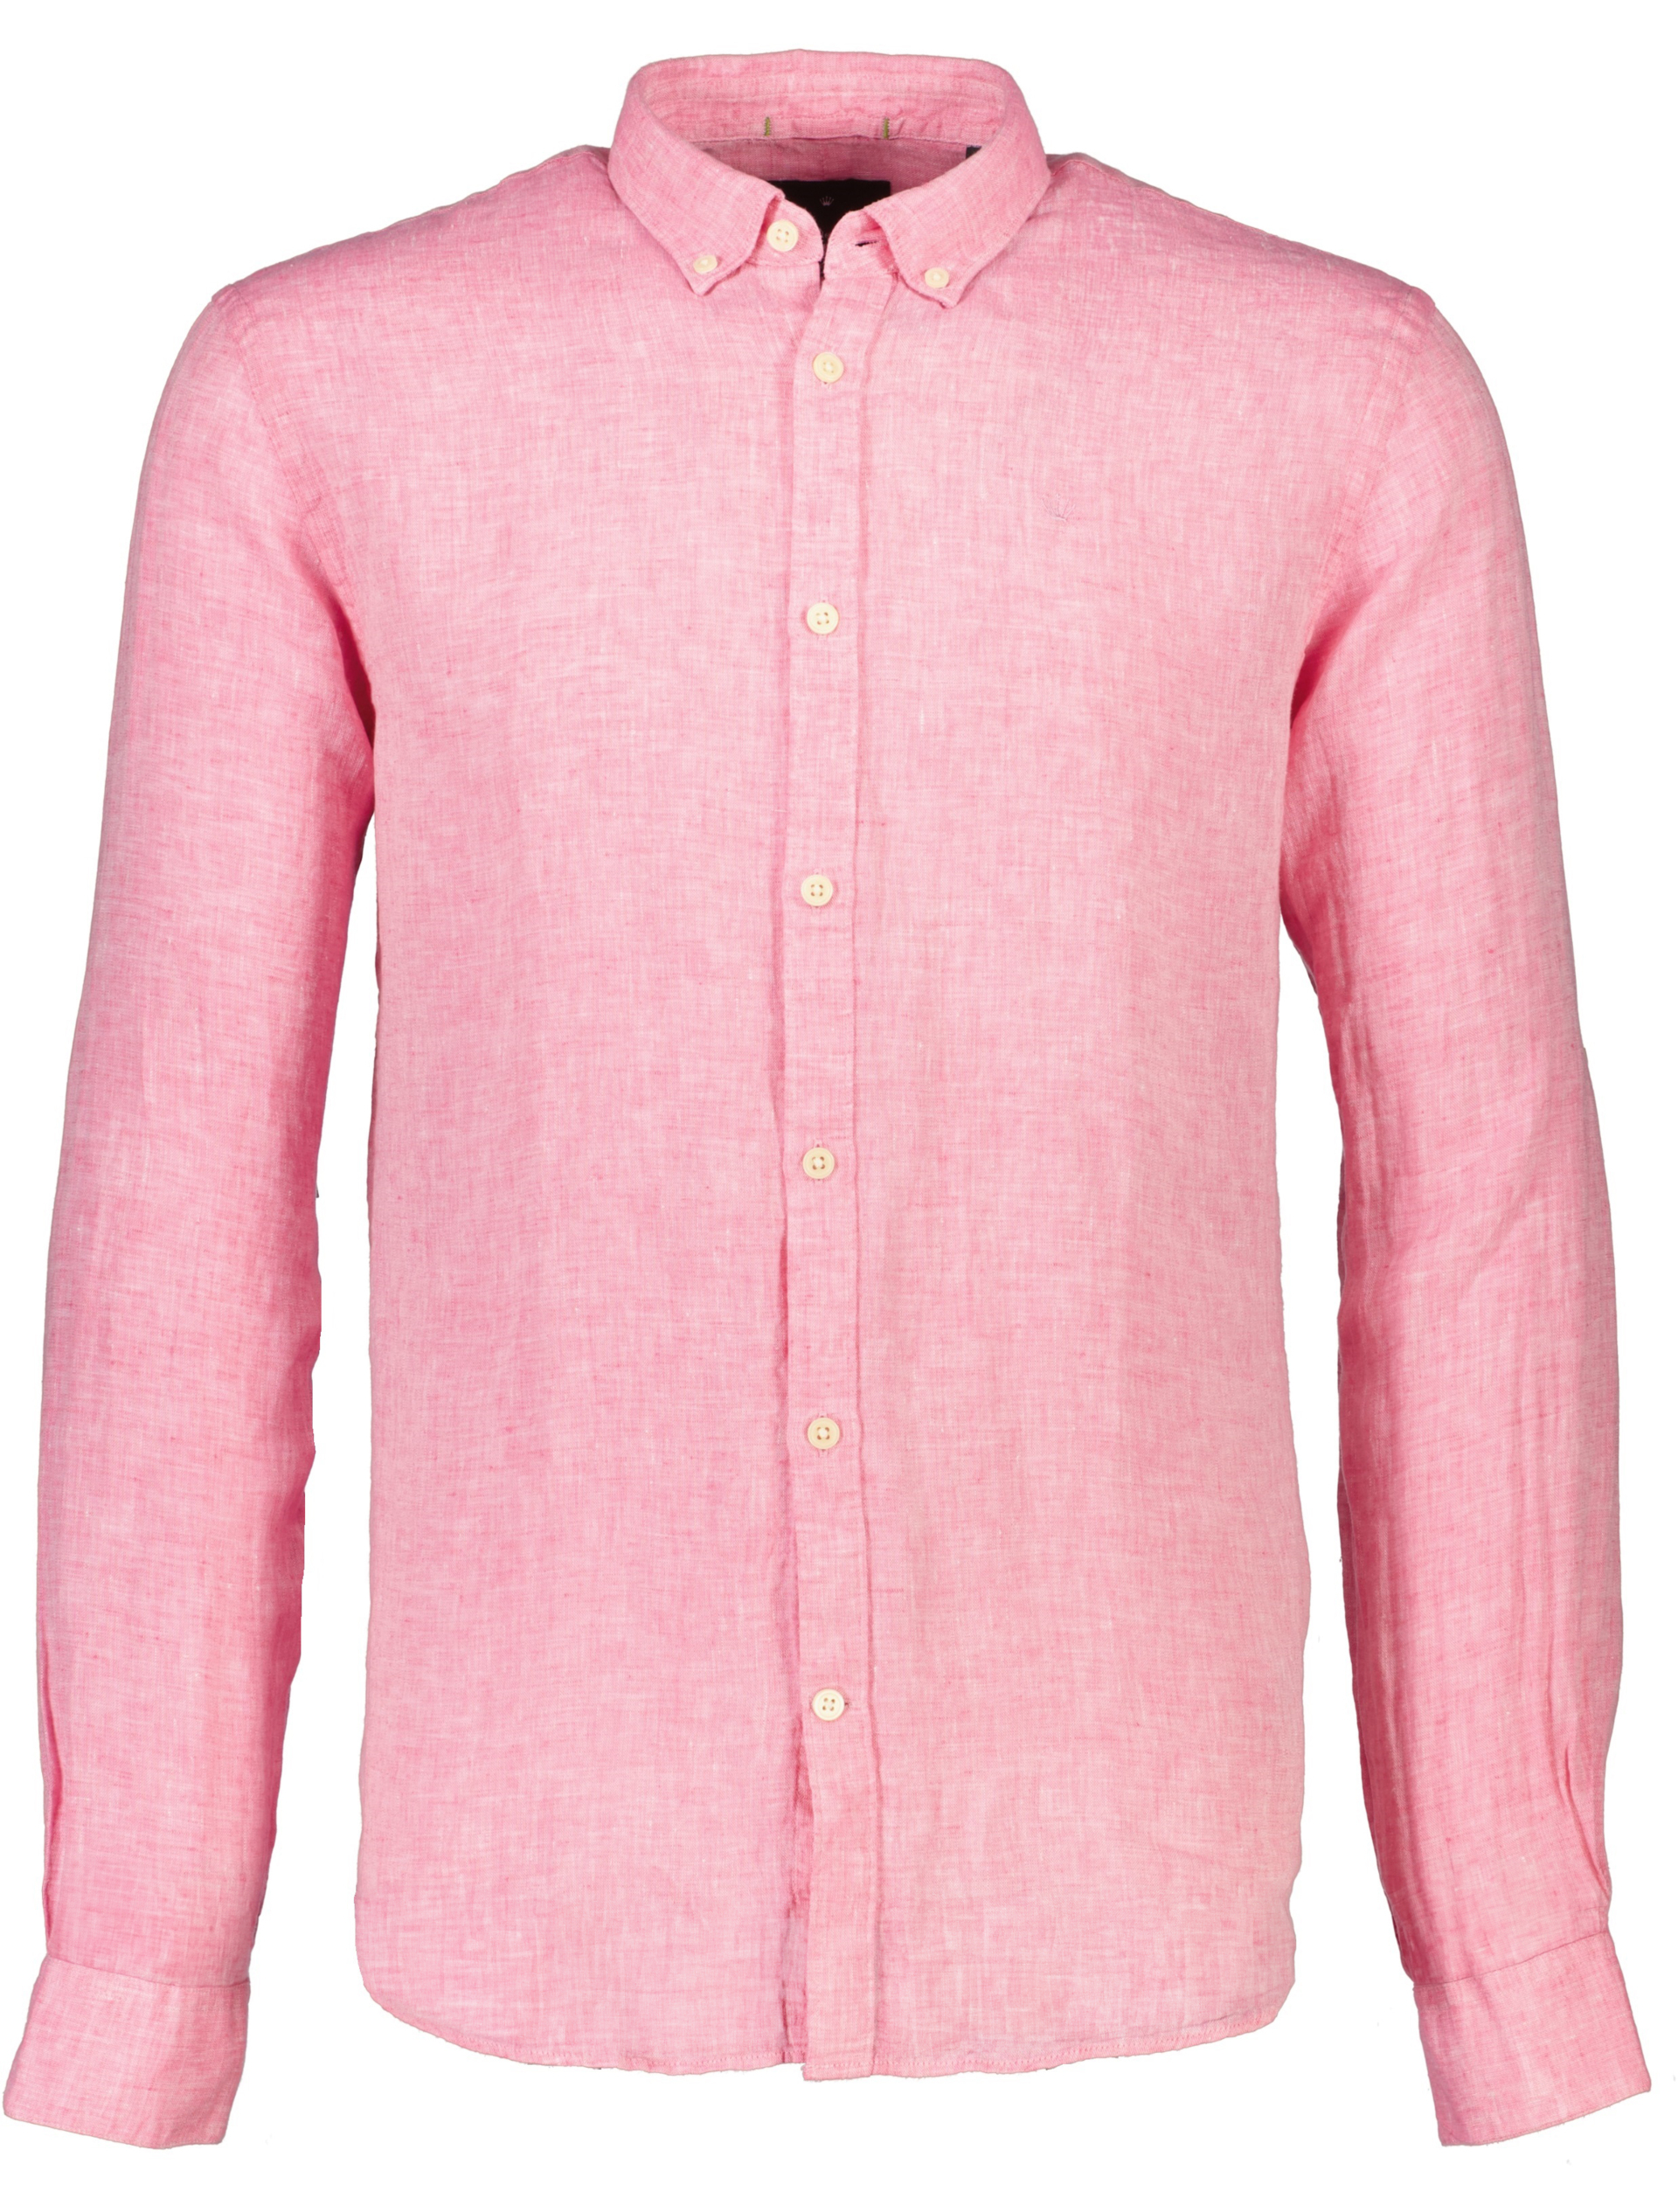 Junk de Luxe Linen shirt red / pink mel